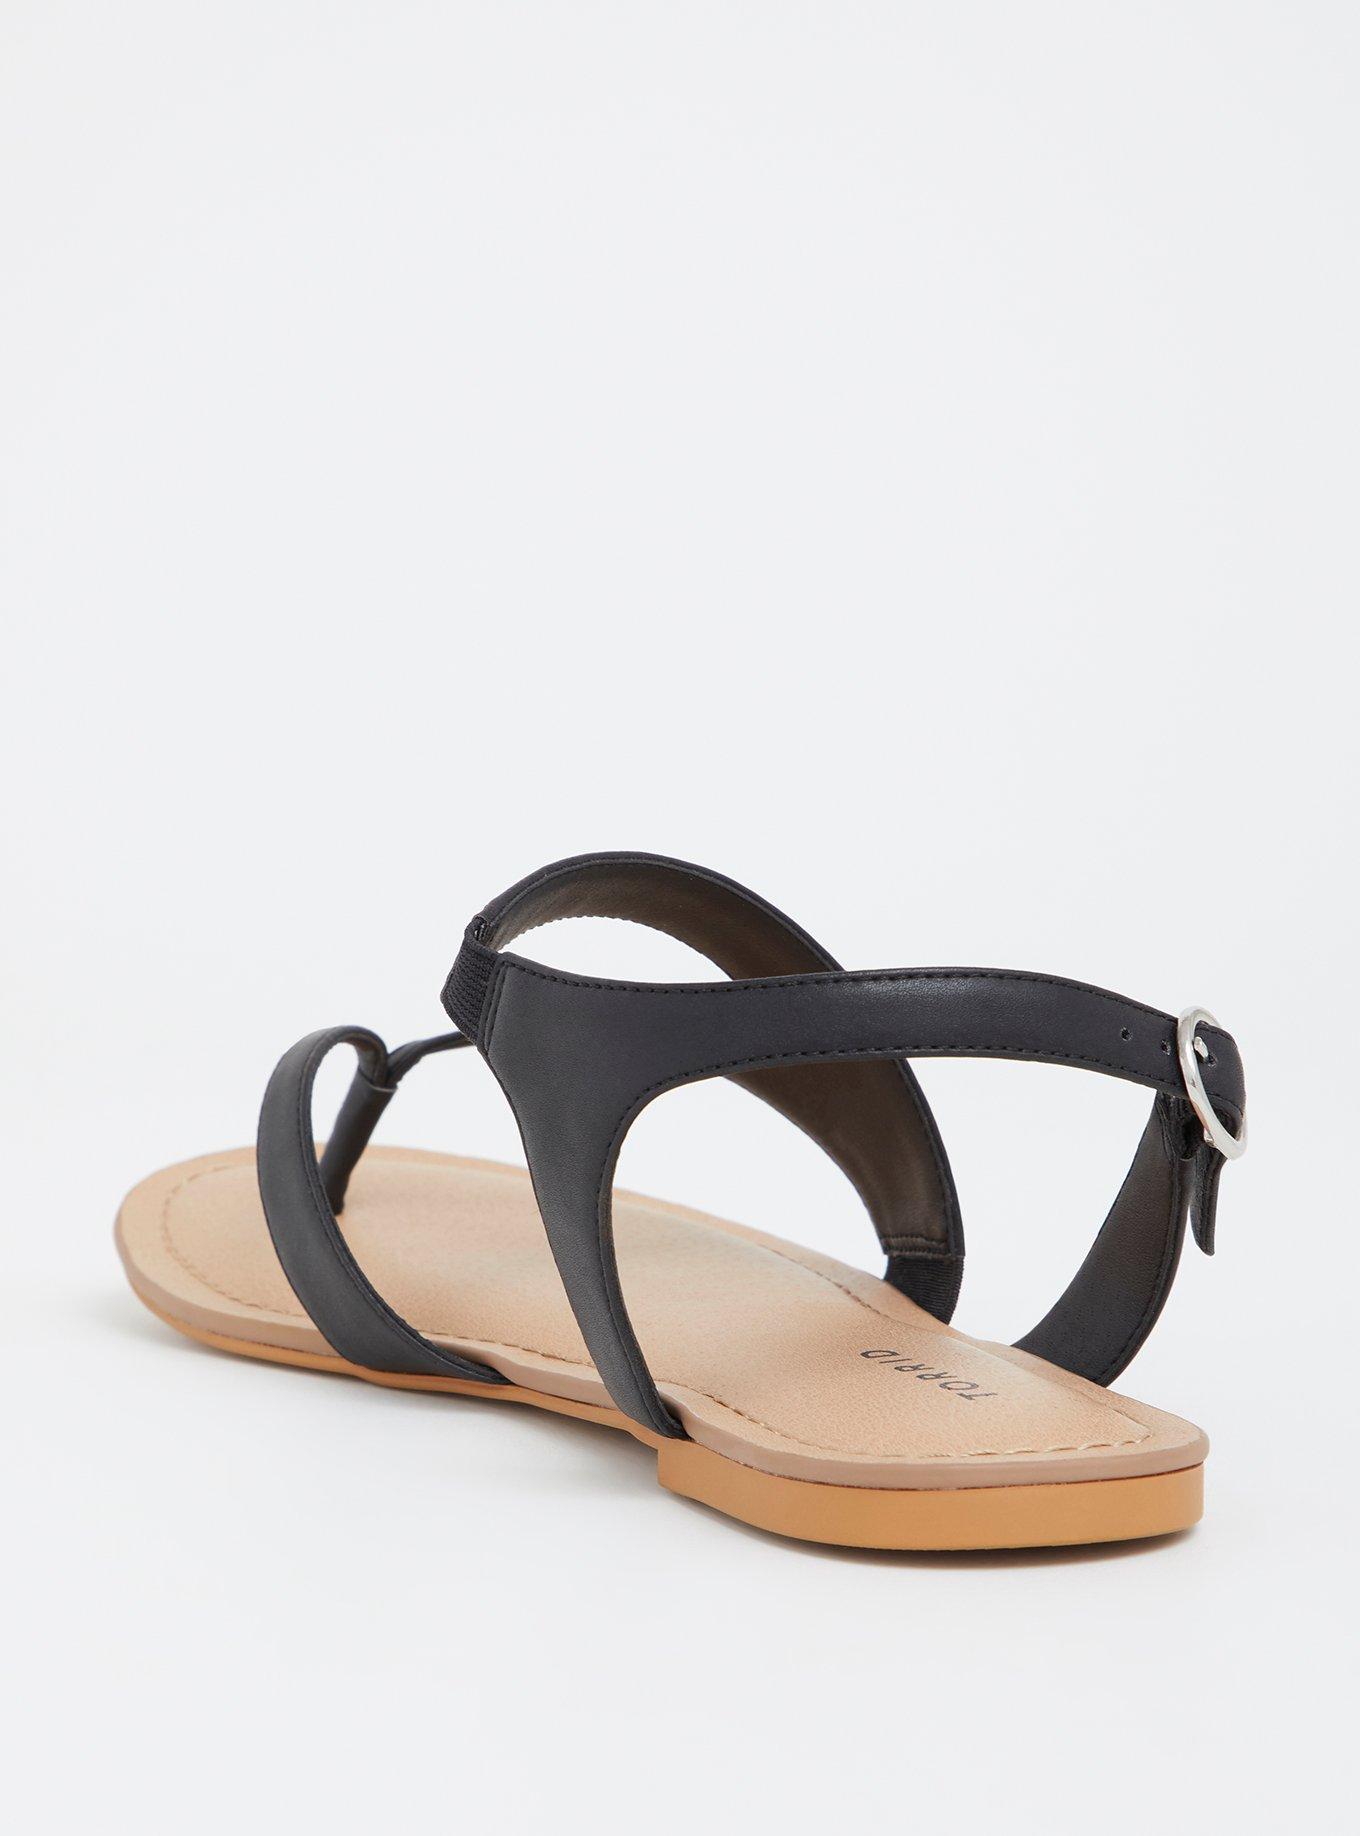 Plus Size - Black Strappy Sandal (Wide Width) - Torrid